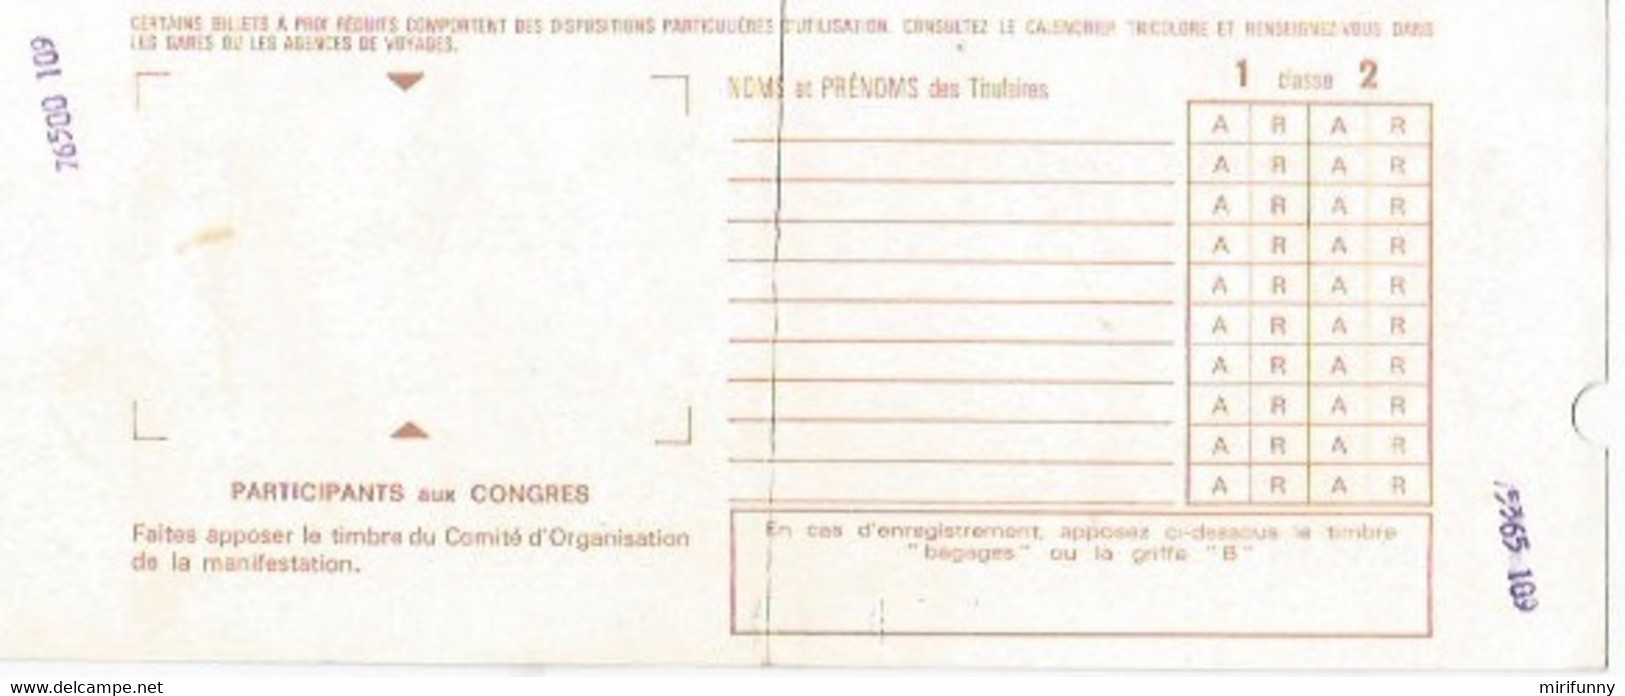 SNCF/BILLET ARLES-AVIGNON/VIA TARASCON/19.04.1983 - Ohne Zuordnung